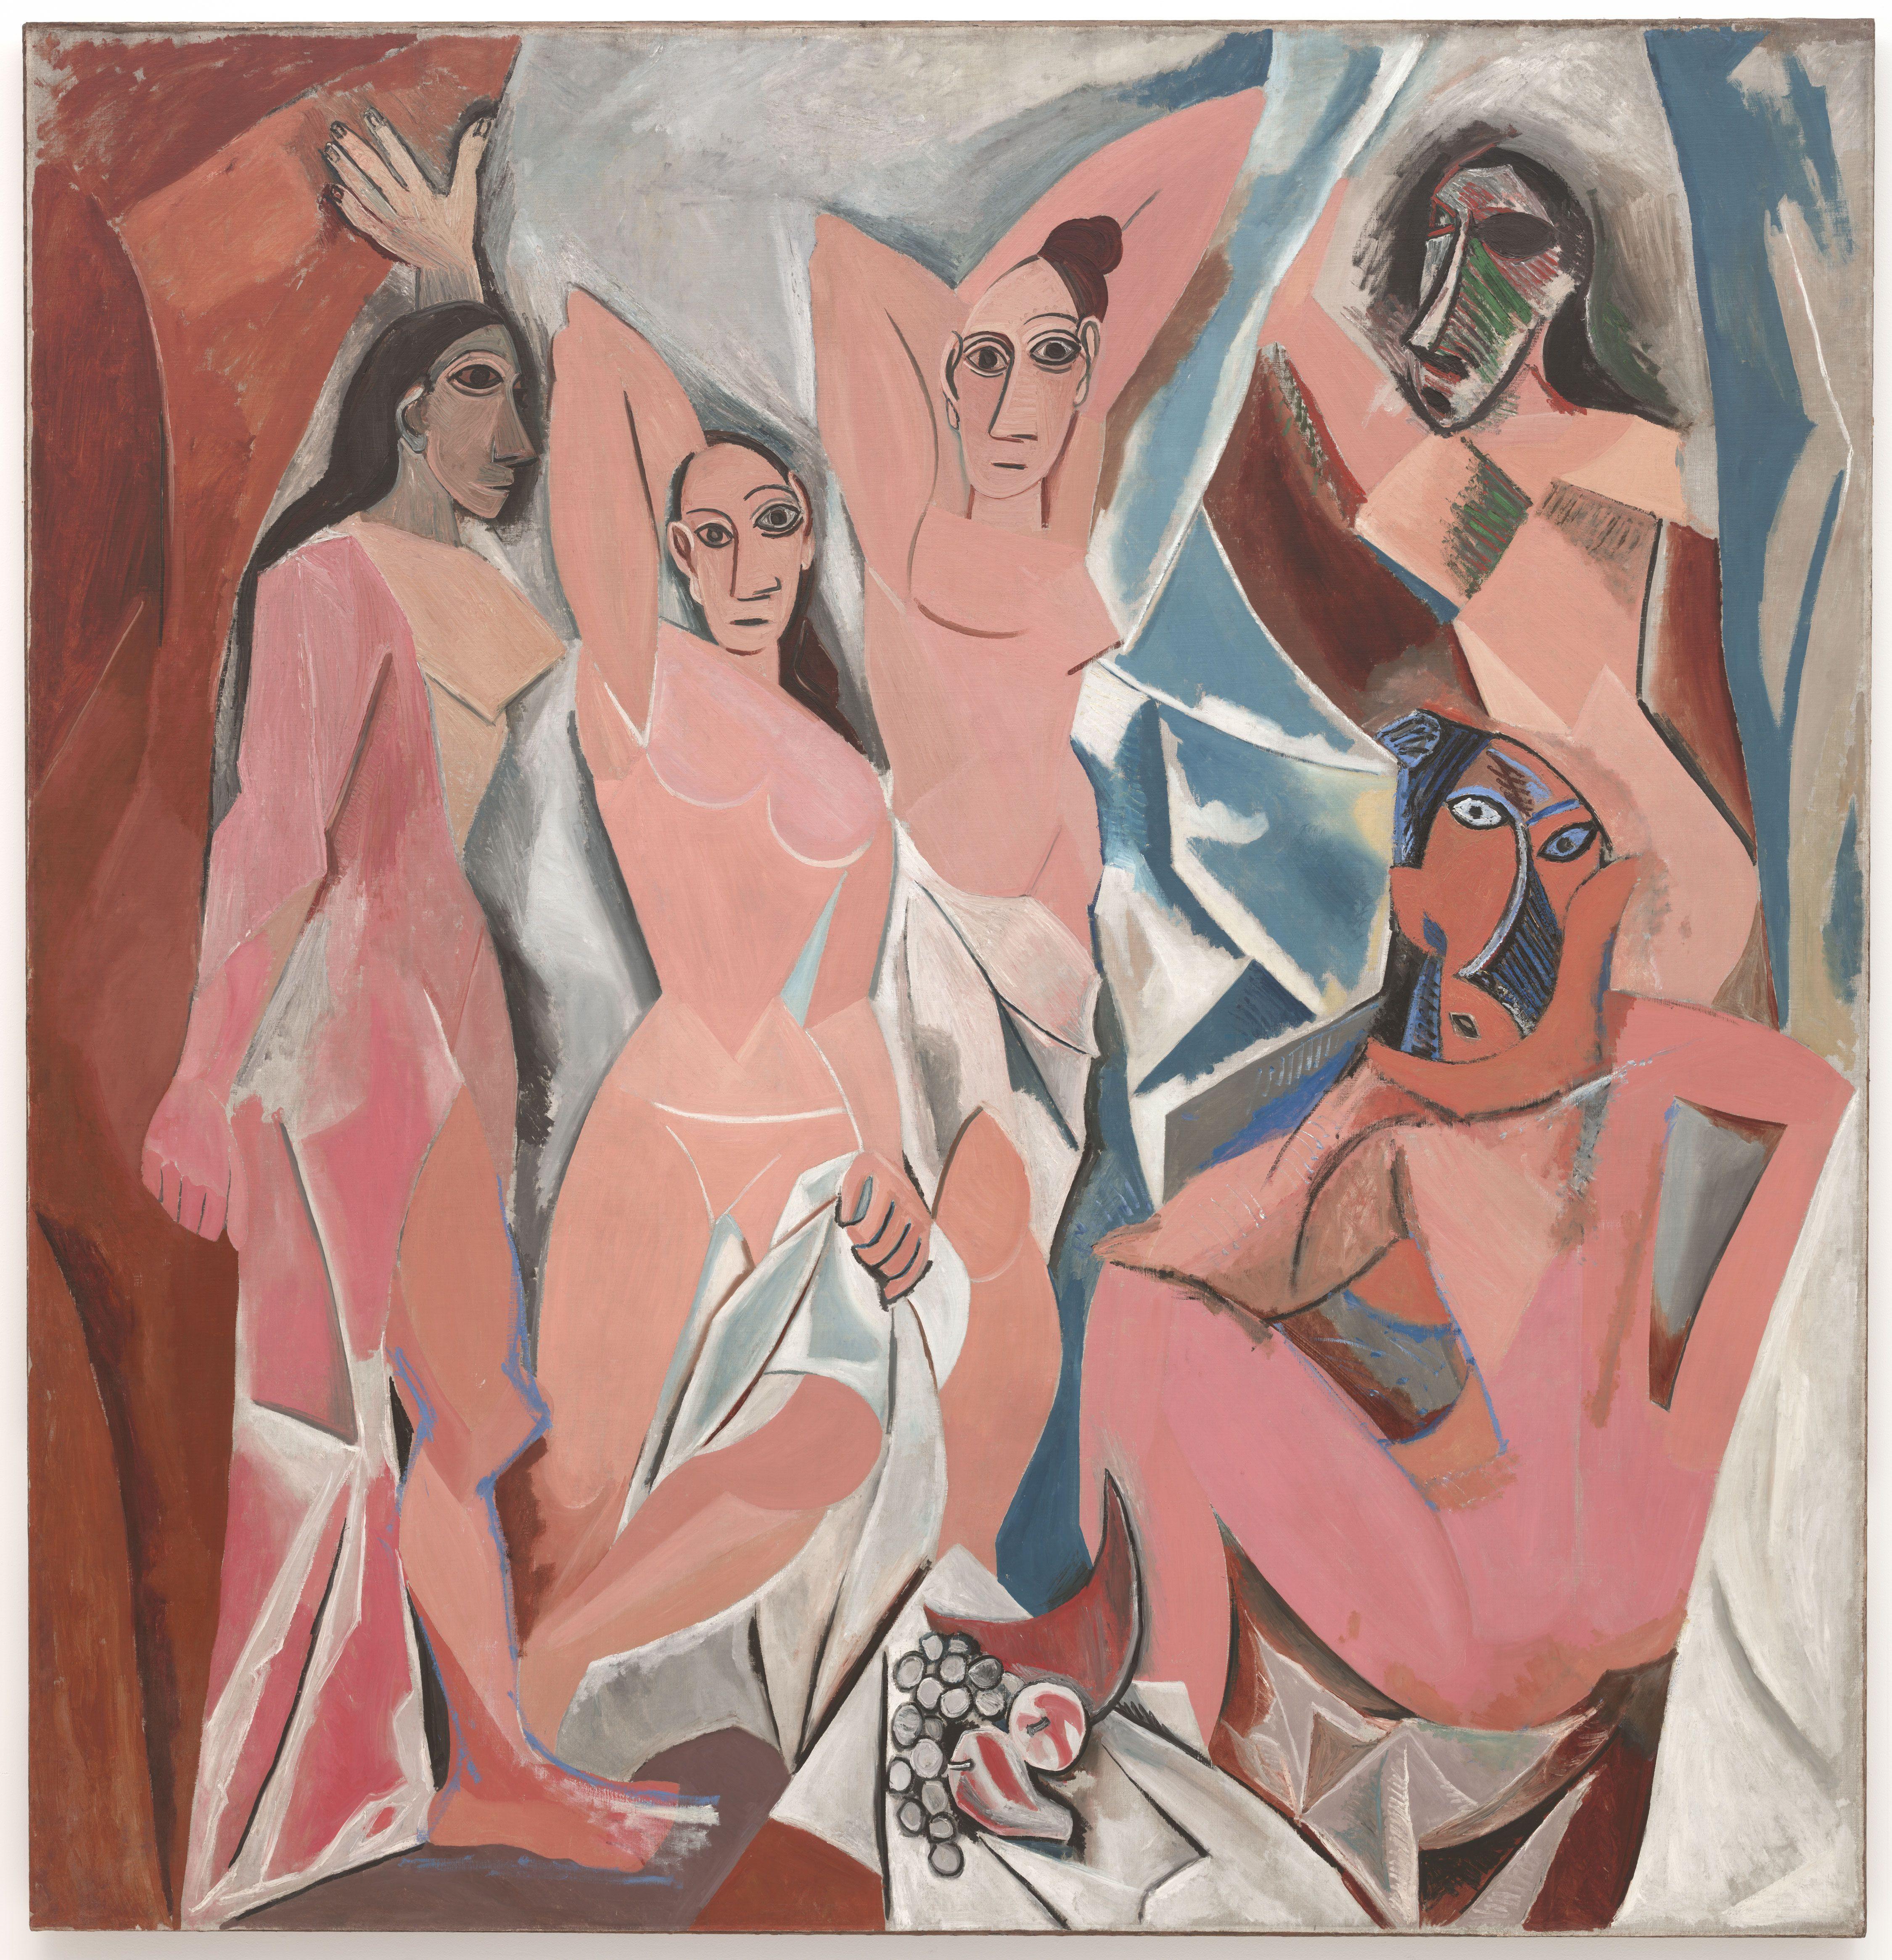 Les Demoiselles d'Avignon by Pablo Picasso - 1907 - 243.9 cm × 233.7 cm Museum of Modern Art